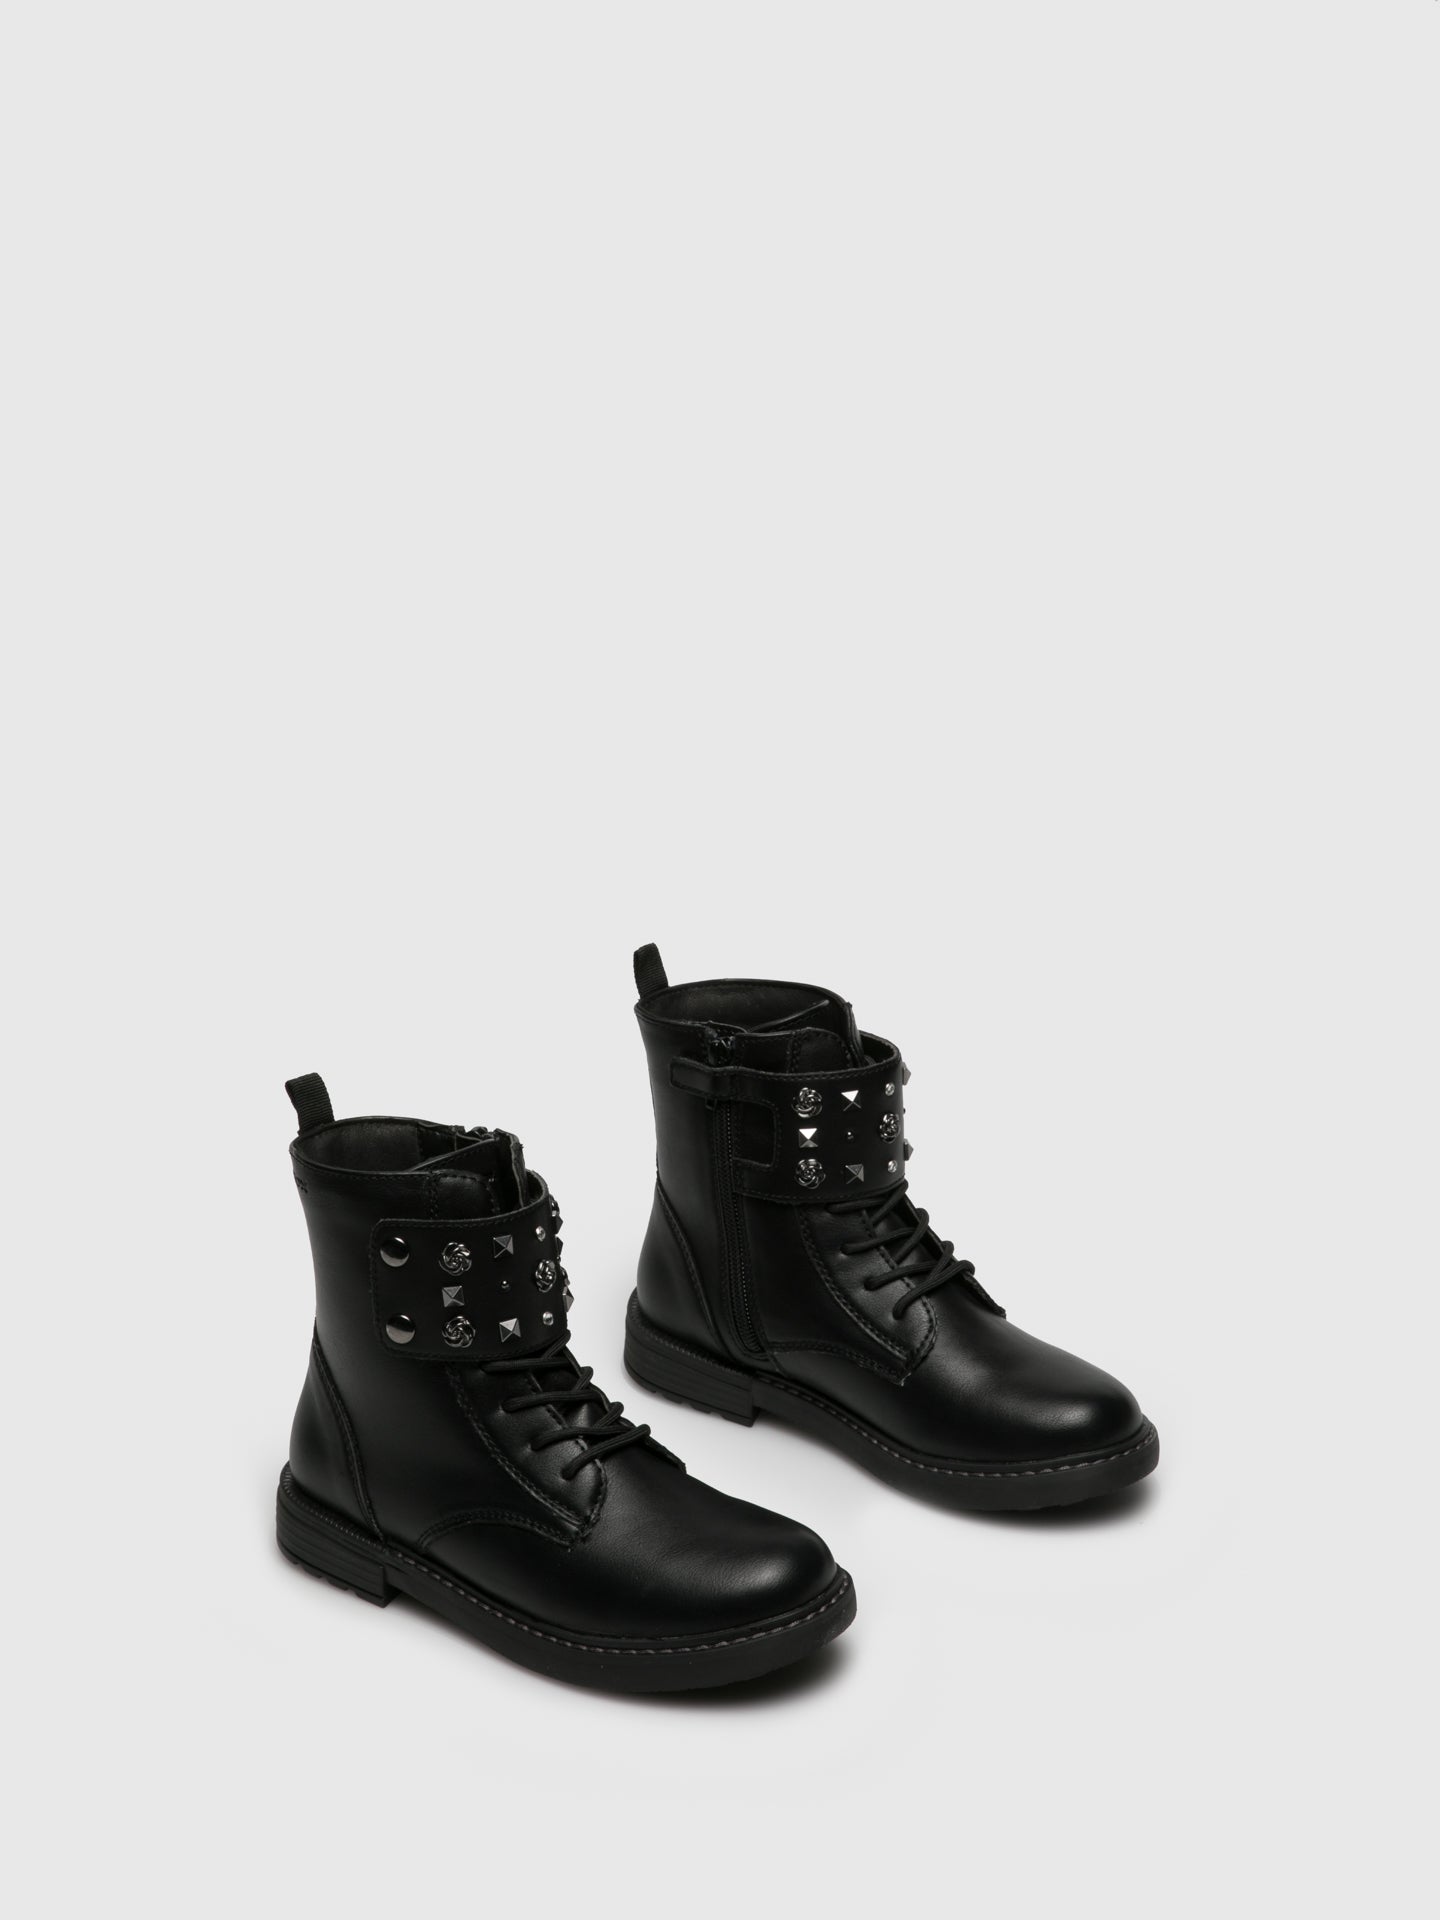 Geox Black Zip Up Boots